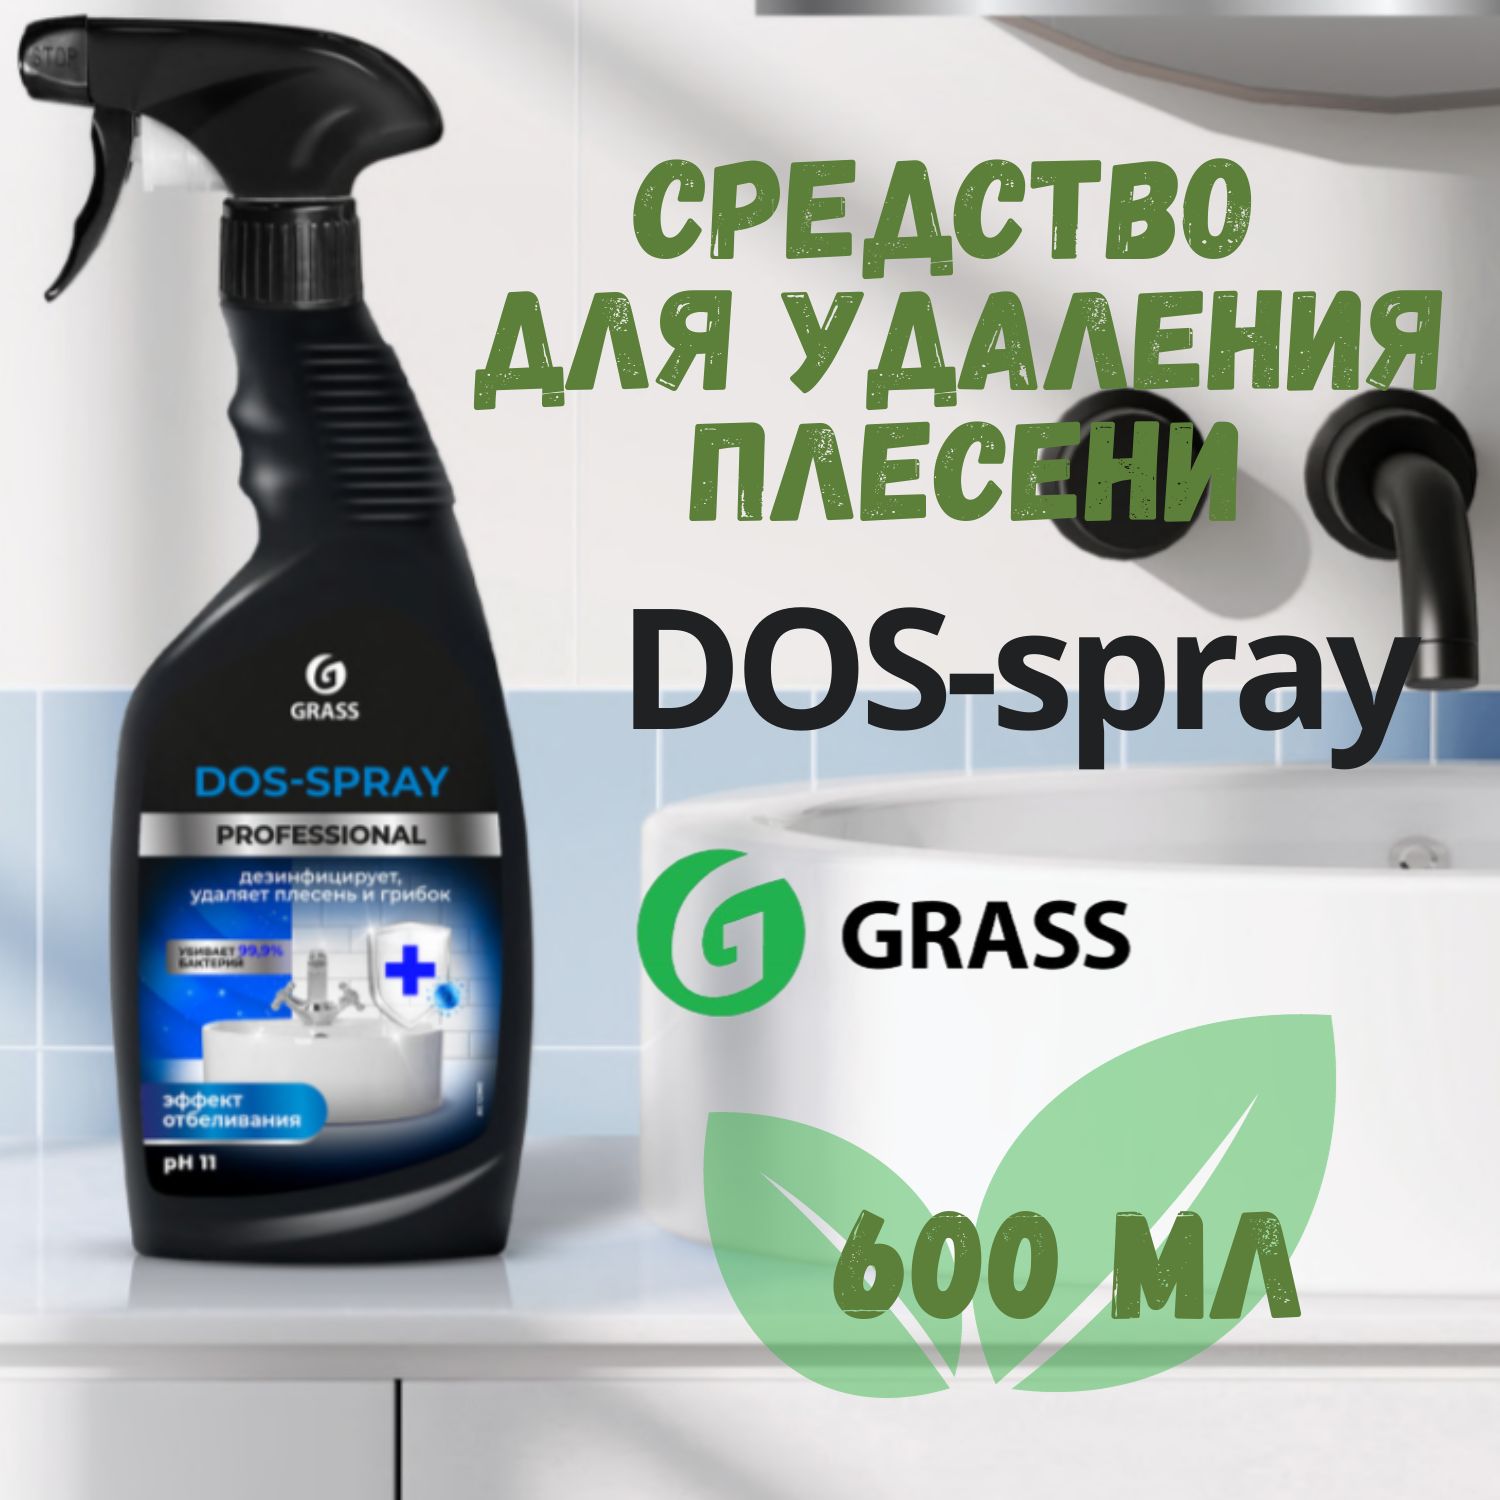 УниверсальночистящееидезинфицирующеесредствоотплесениигрибкаGRASSDos-sprayProfessional,600мл